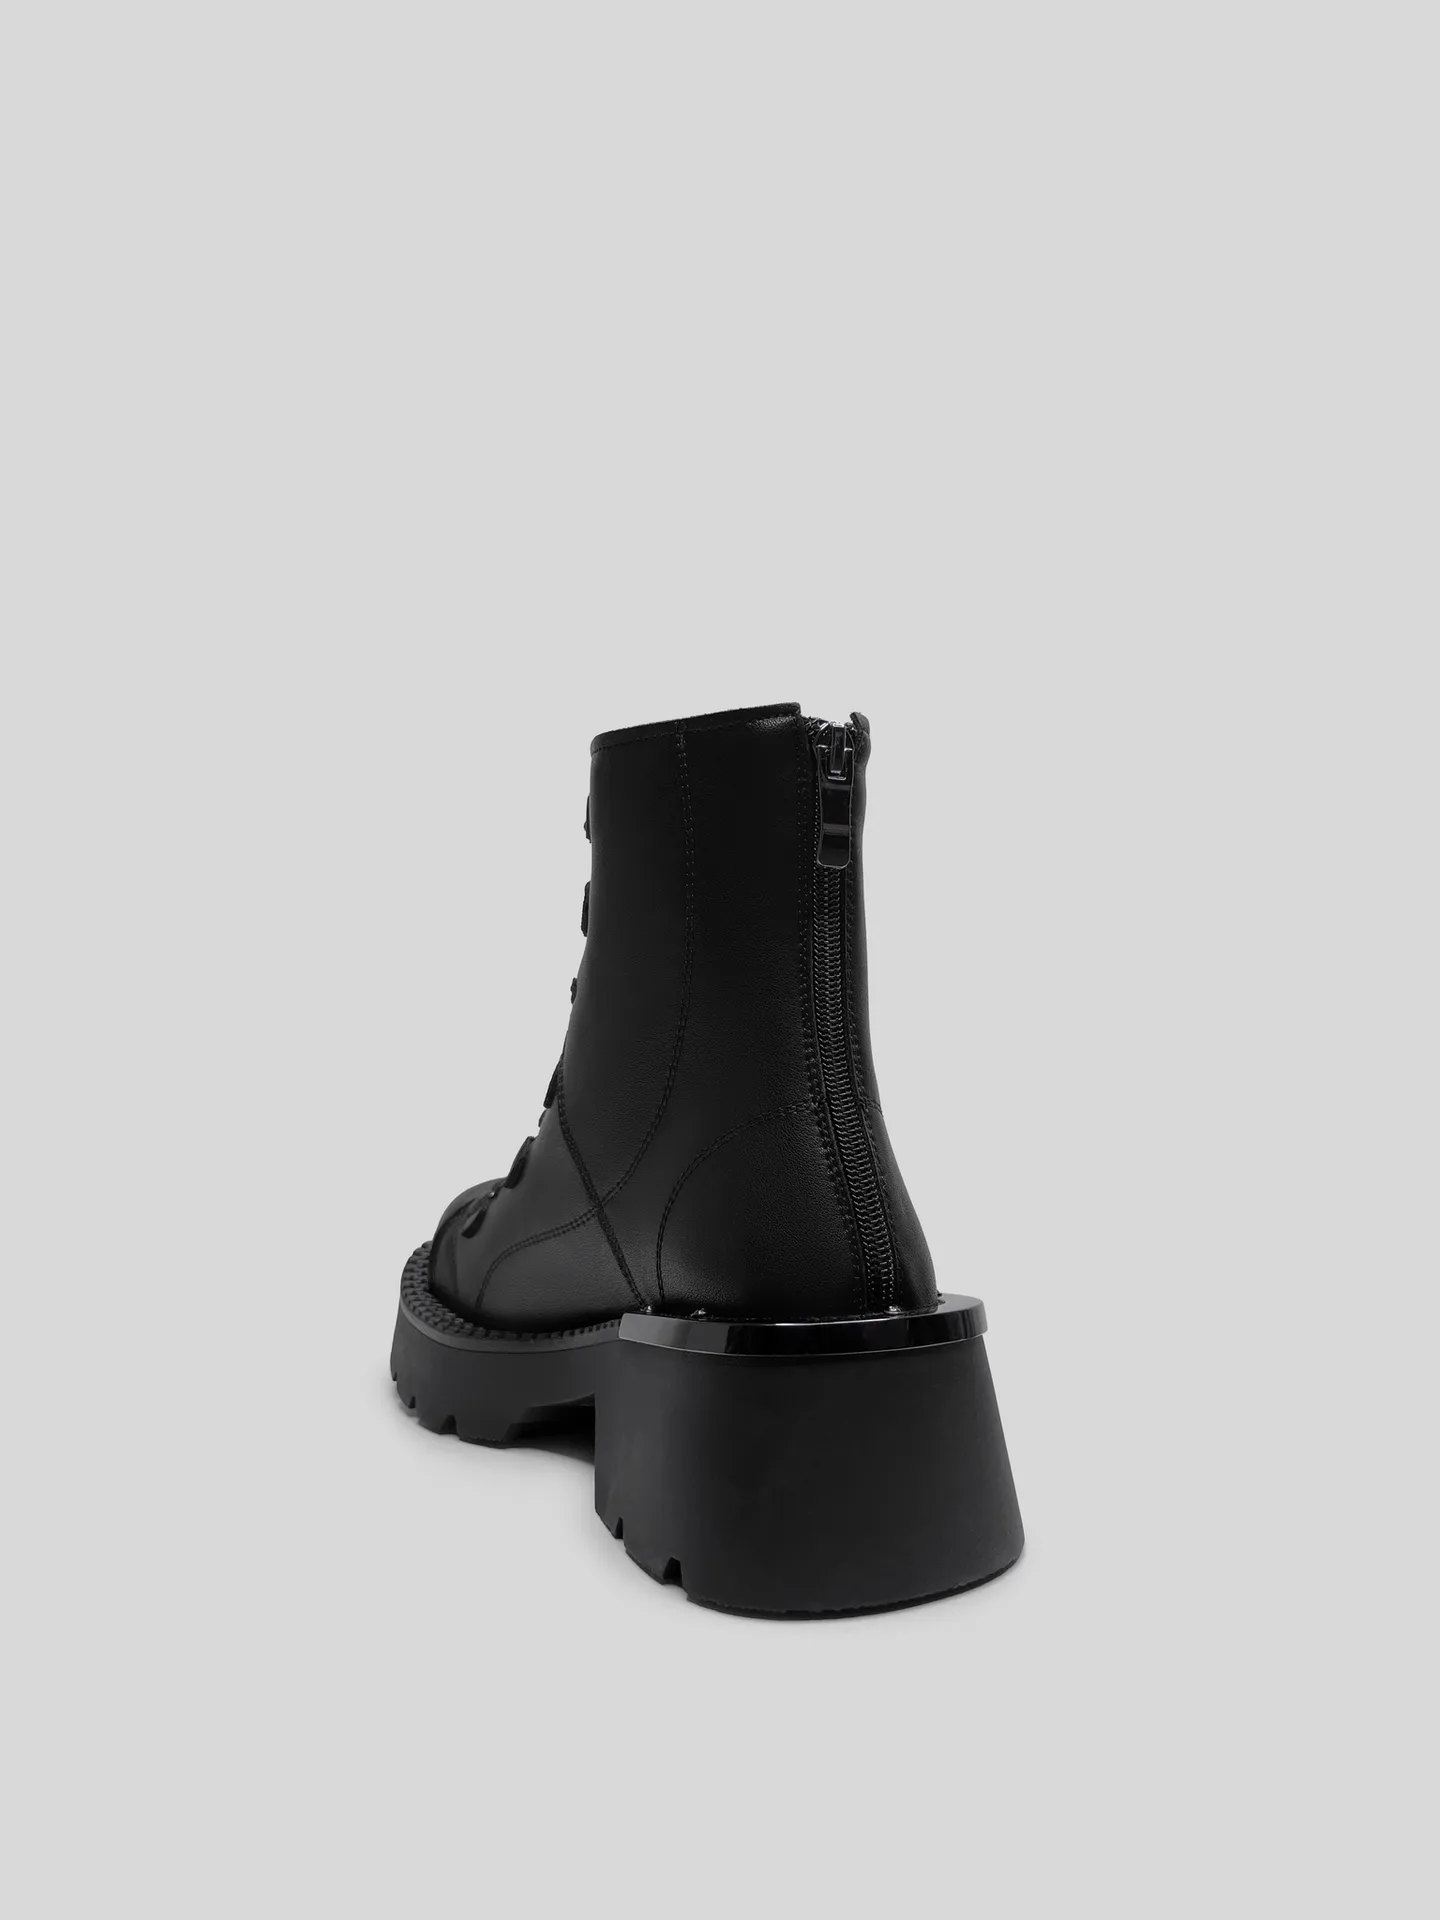 Ботинки Egga QXP523-1 на молнии сзади и шнуровкой спереди с металлическими вставками оптом